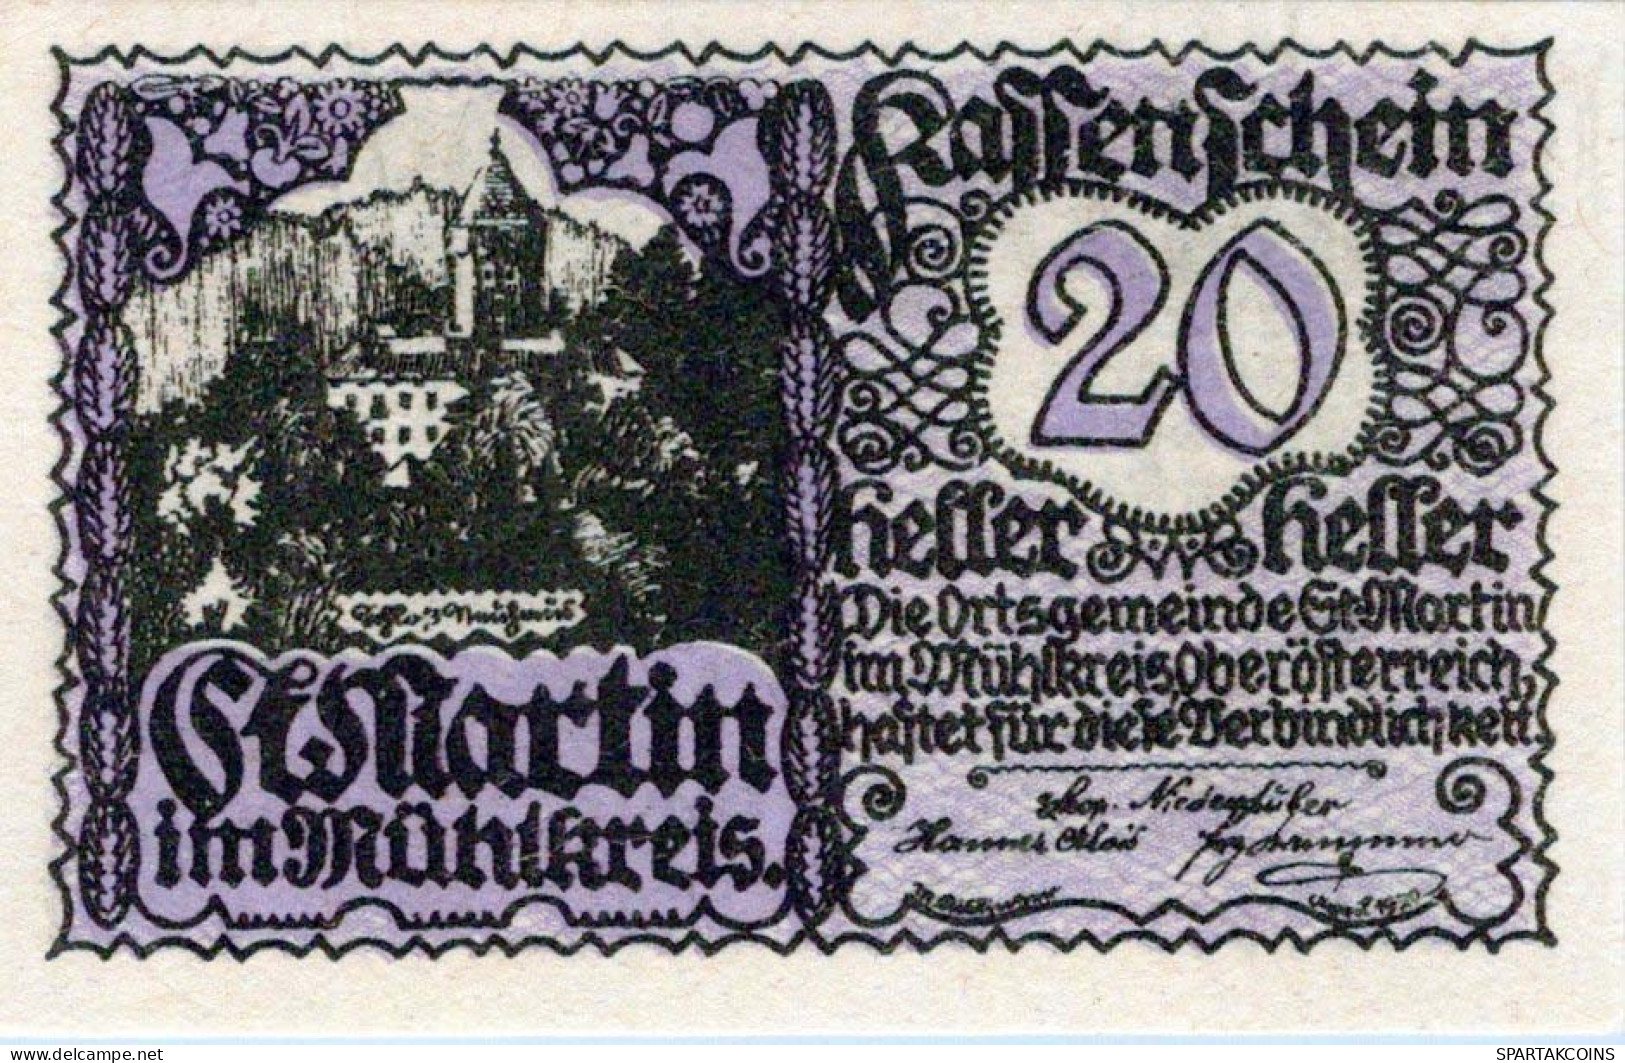 20 HELLER 1920 Stadt SANKT MARTIN IM MÜHLKREIS Oberösterreich Österreich Notgeld Papiergeld Banknote #PG686 - [11] Emissions Locales